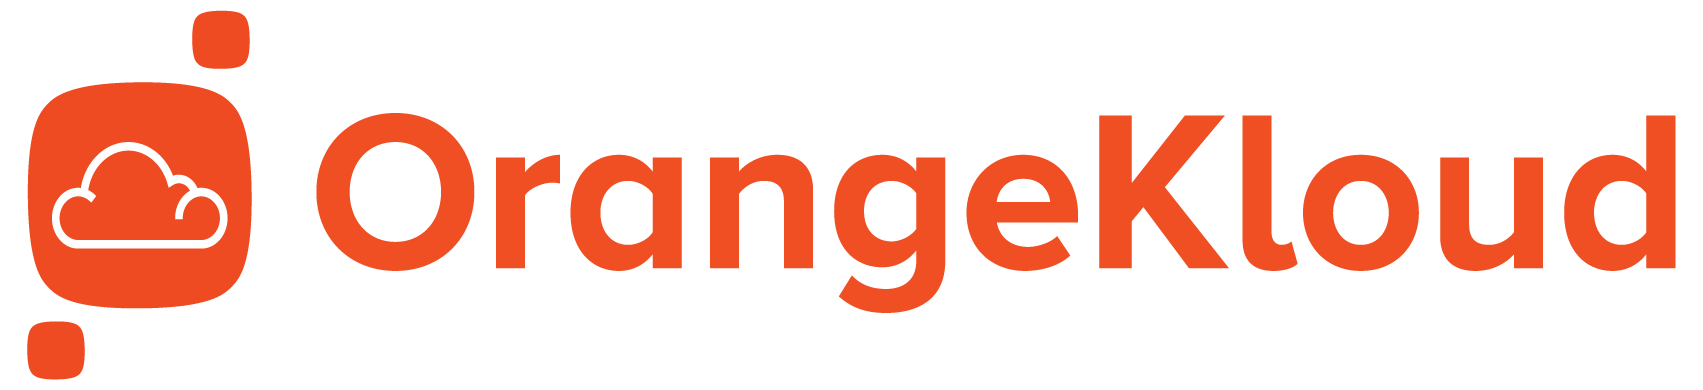 Orangekloud Pte Ltd - Orangekloud Customer Self Ordering App